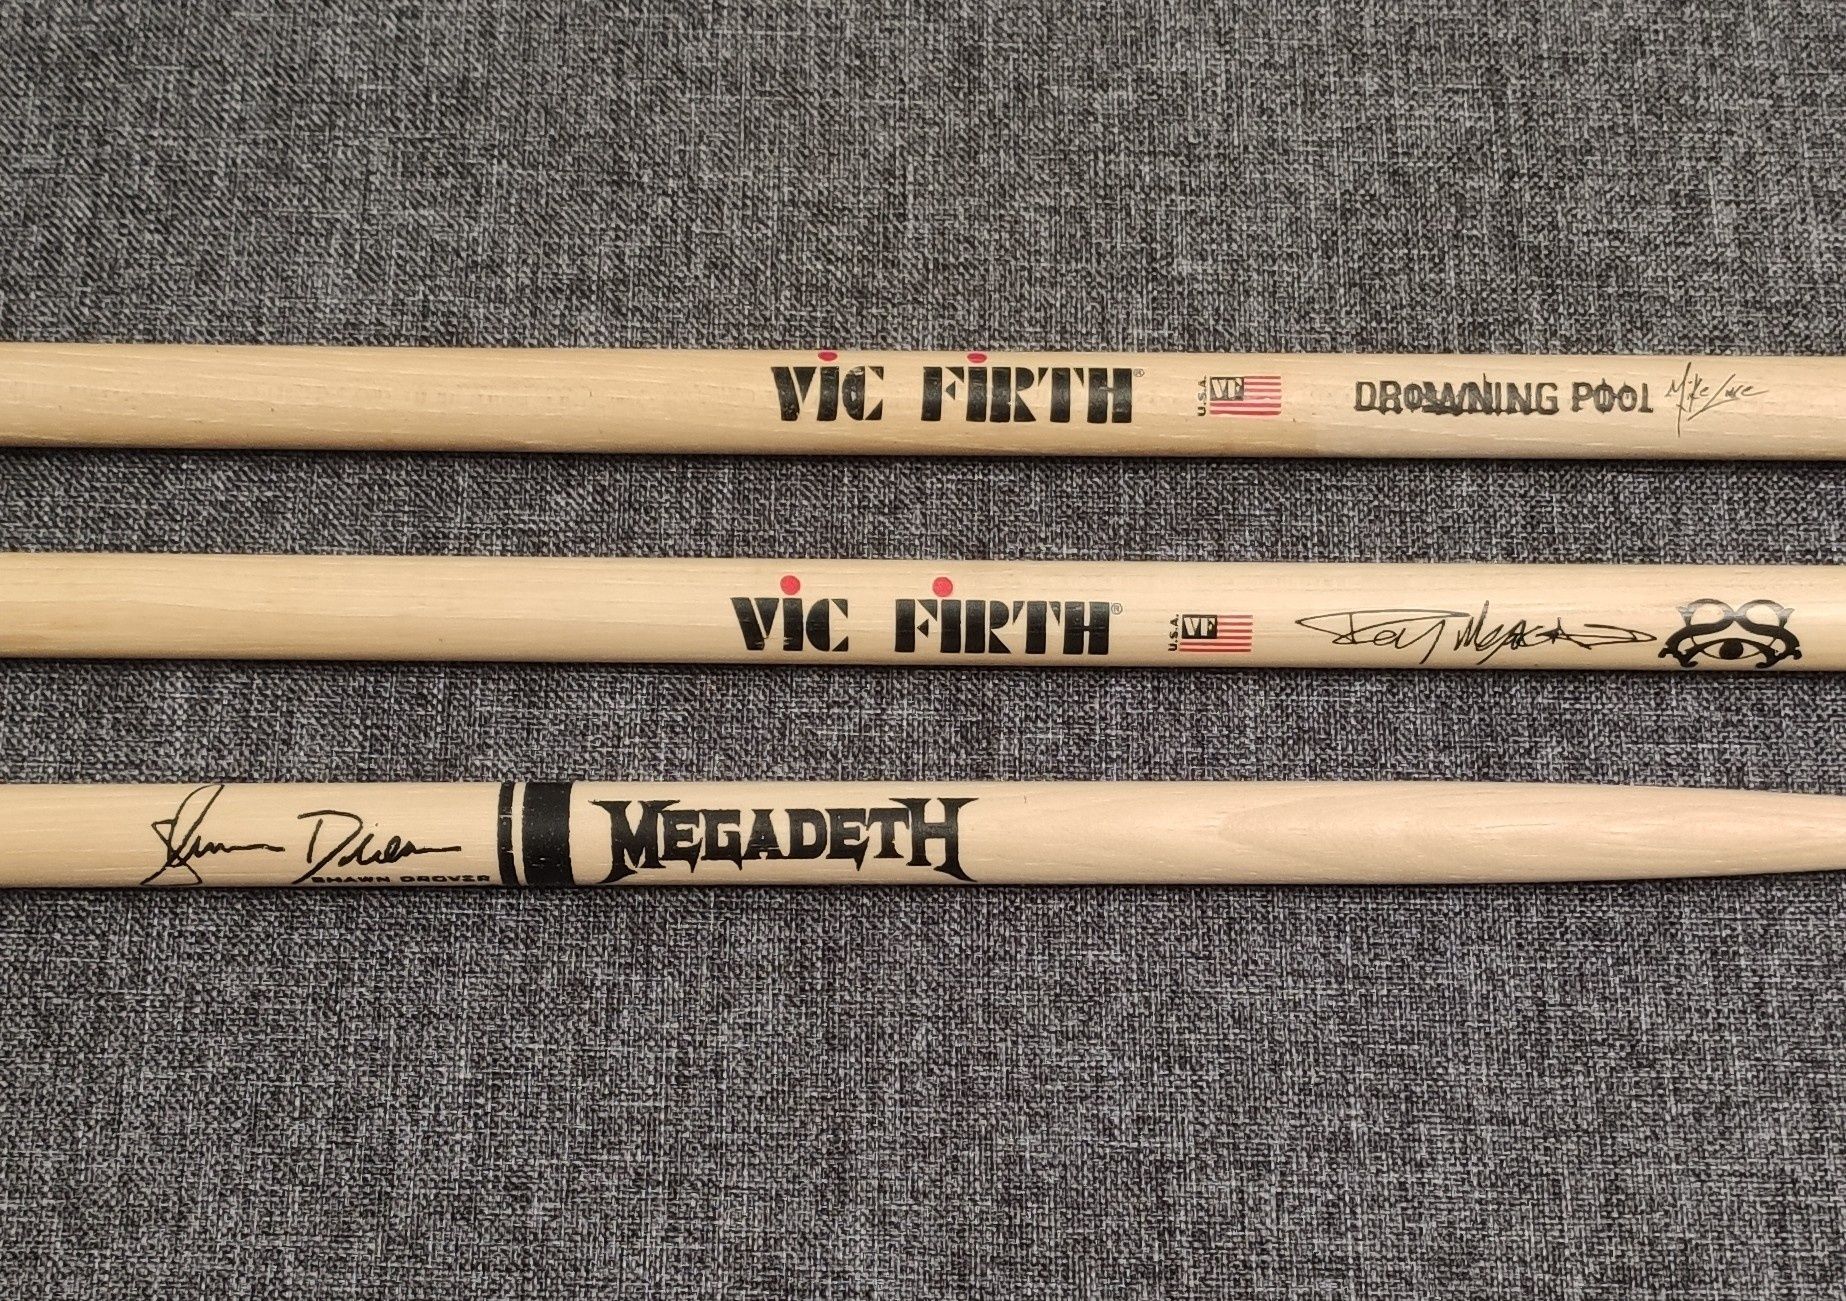 Барабанные палочки Megadeth, Drowning Pool и Stone Sour с автографами.